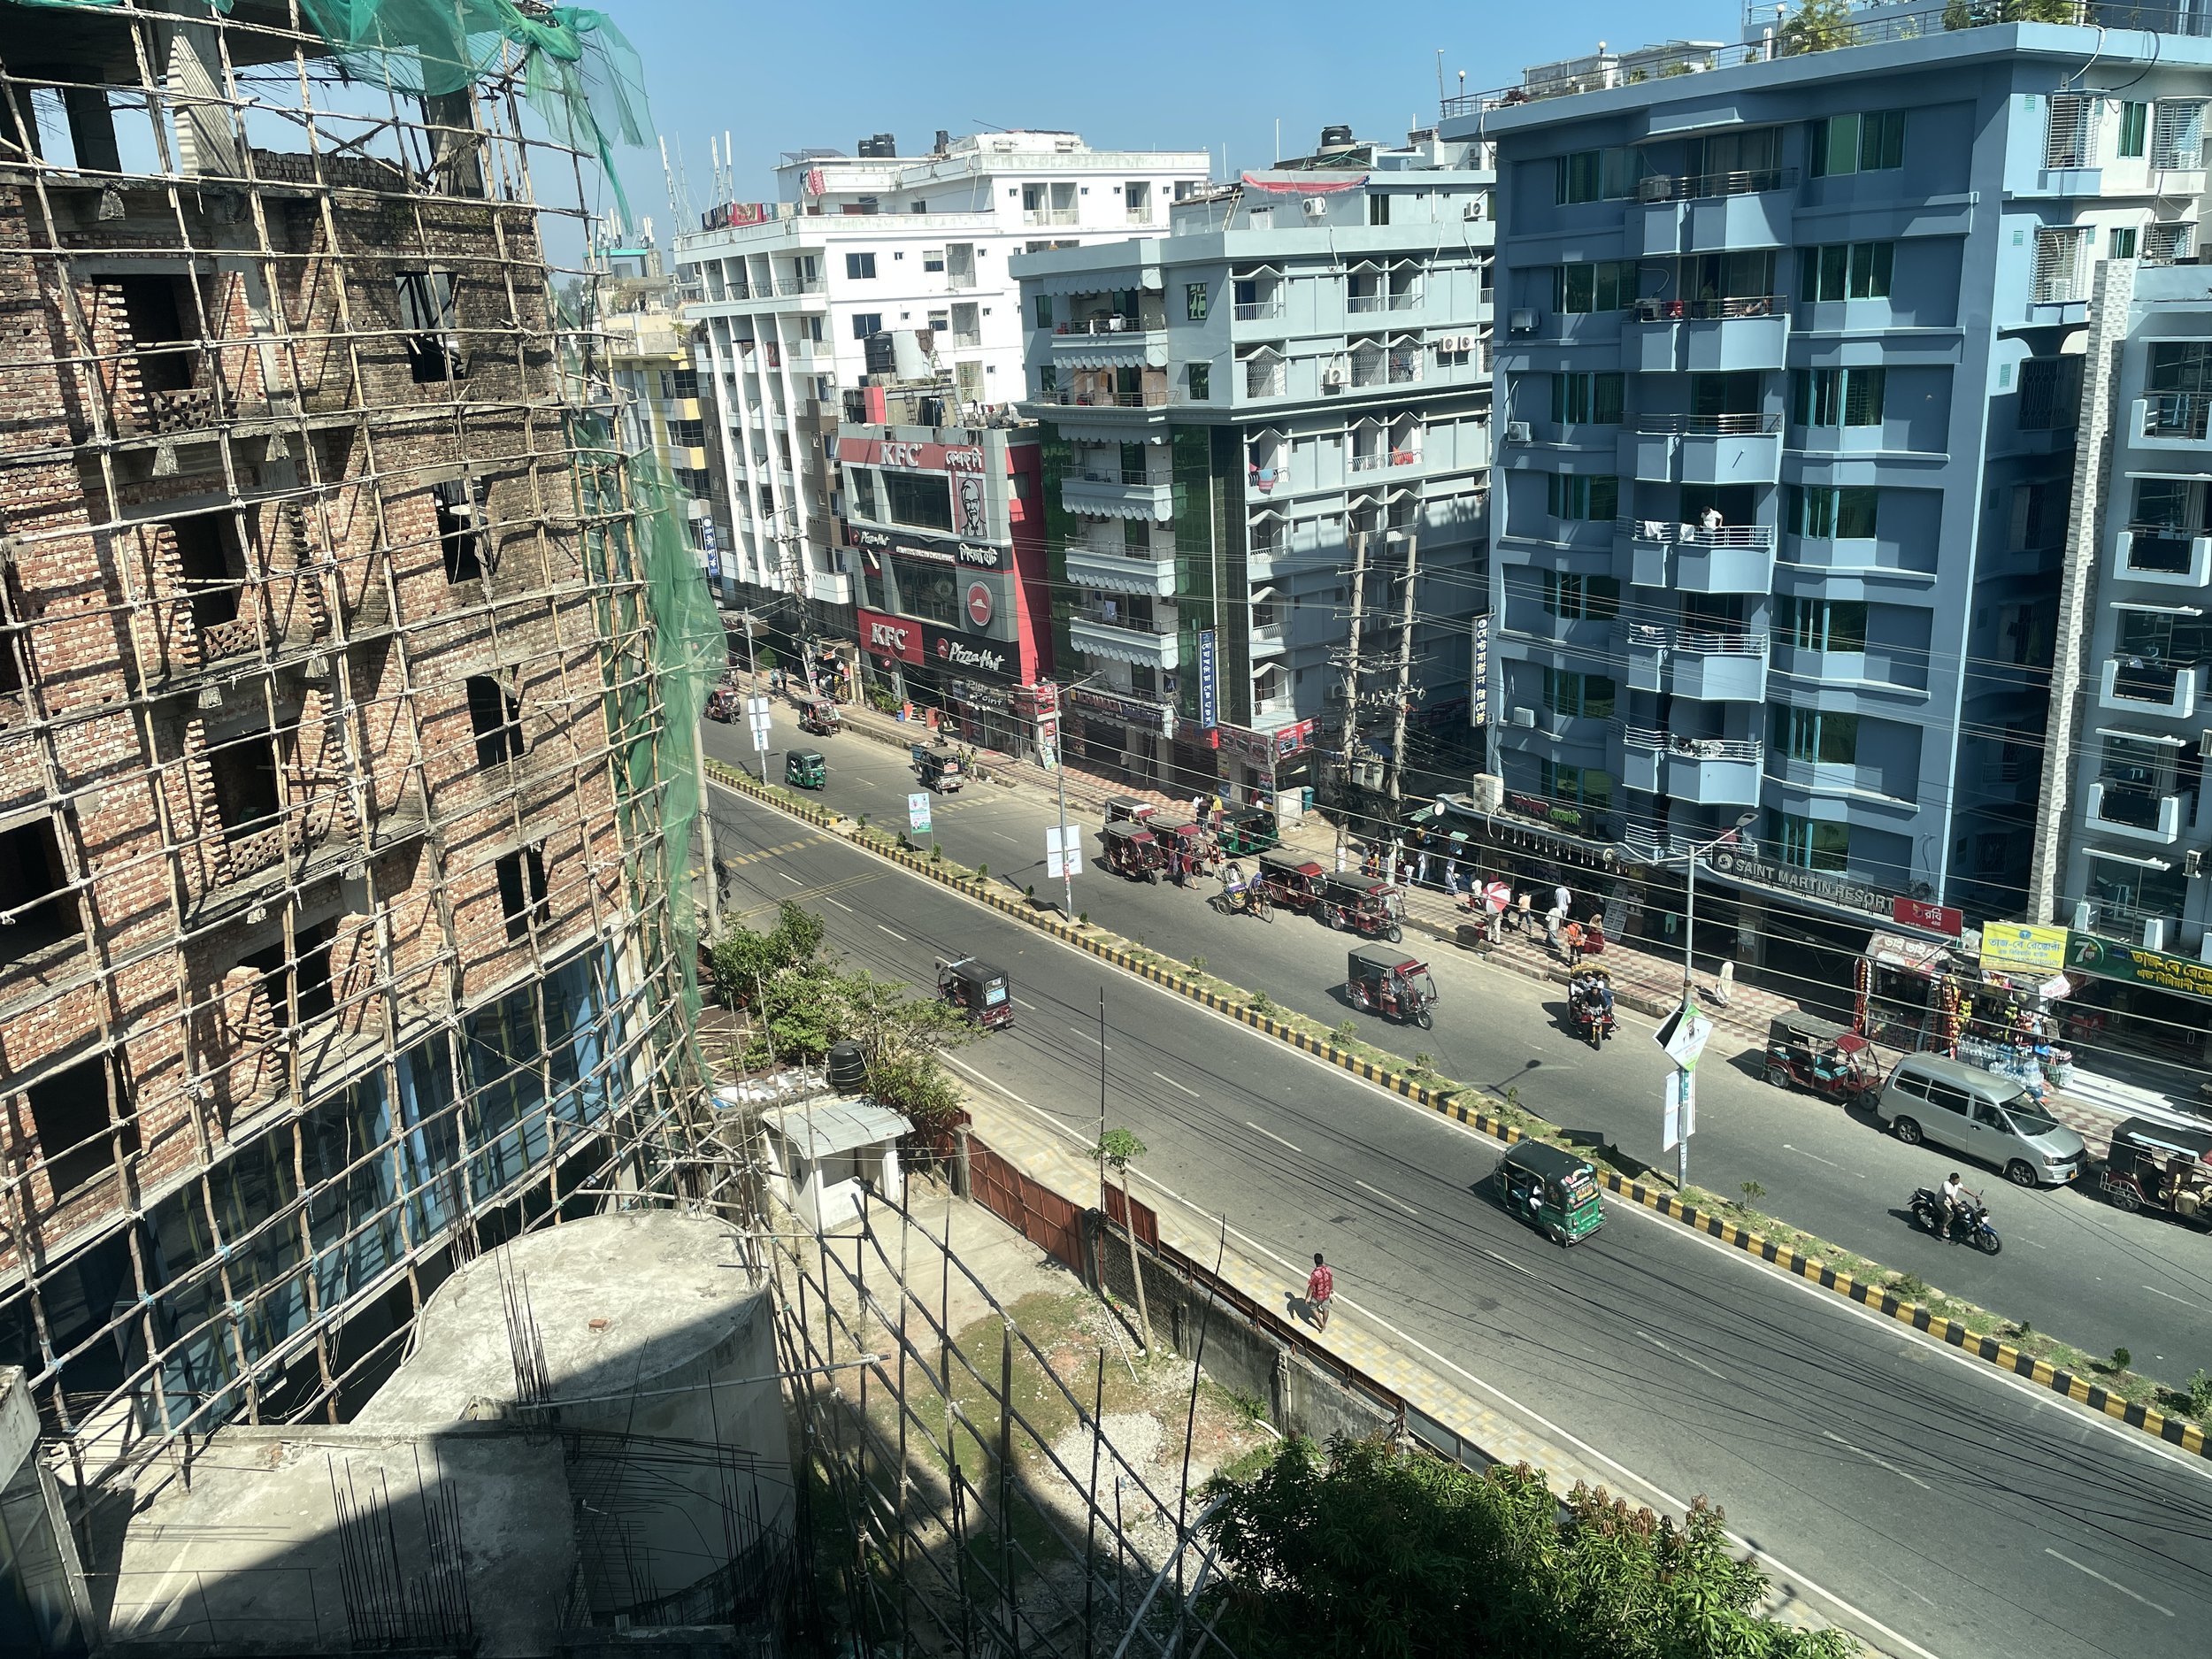 View outside LongBeach Hotel, Cox's Bazar, Bangladesh